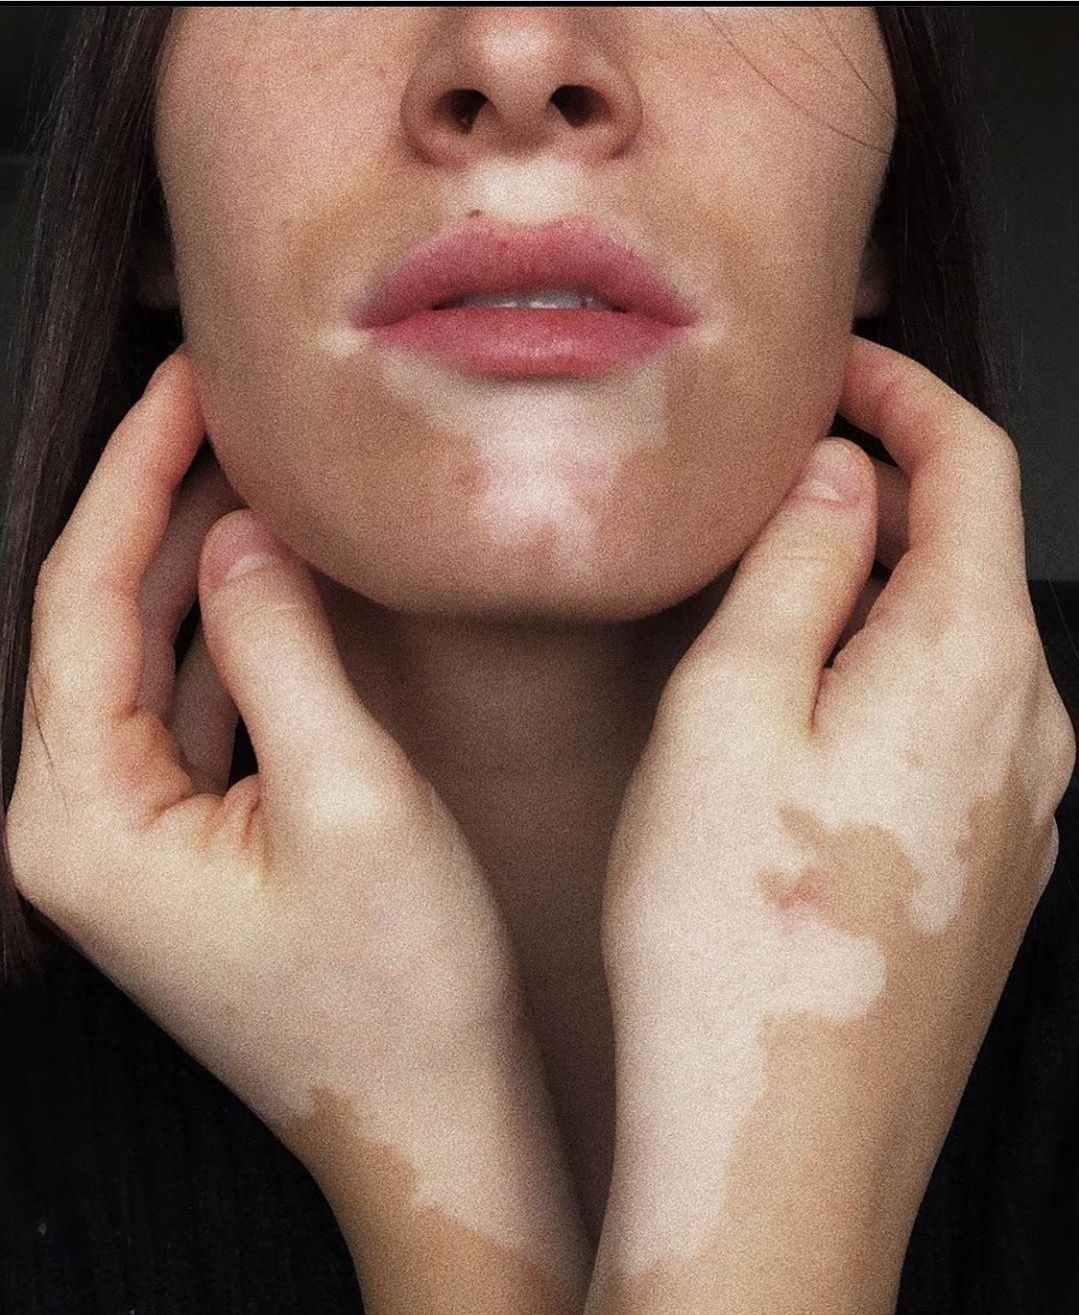 viticolor vitiligo. витиколор. Франция. БАД